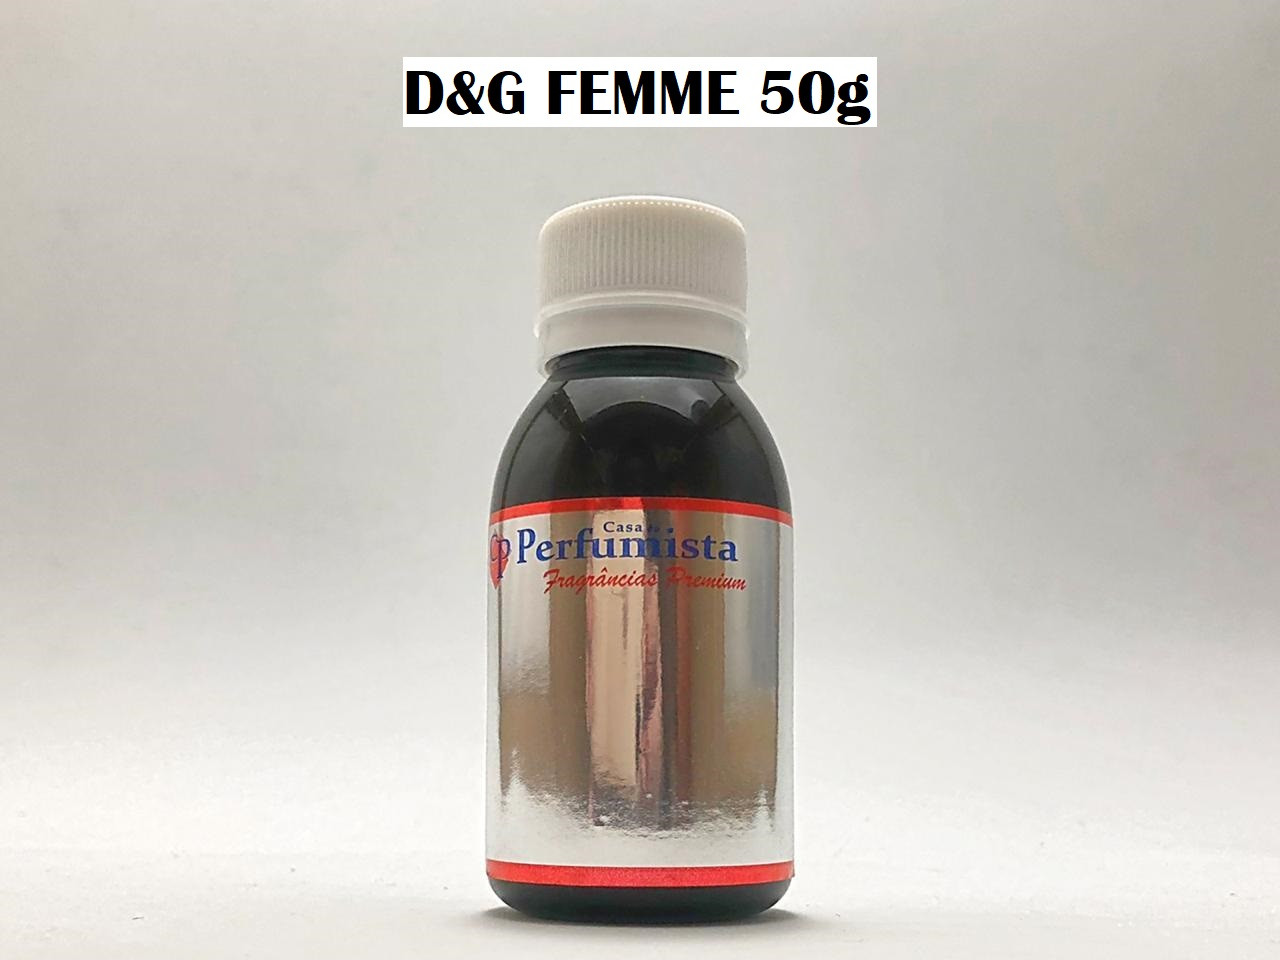 D&G FEMME 50g - Inspiração: Dolce & Gabbana Feminino 